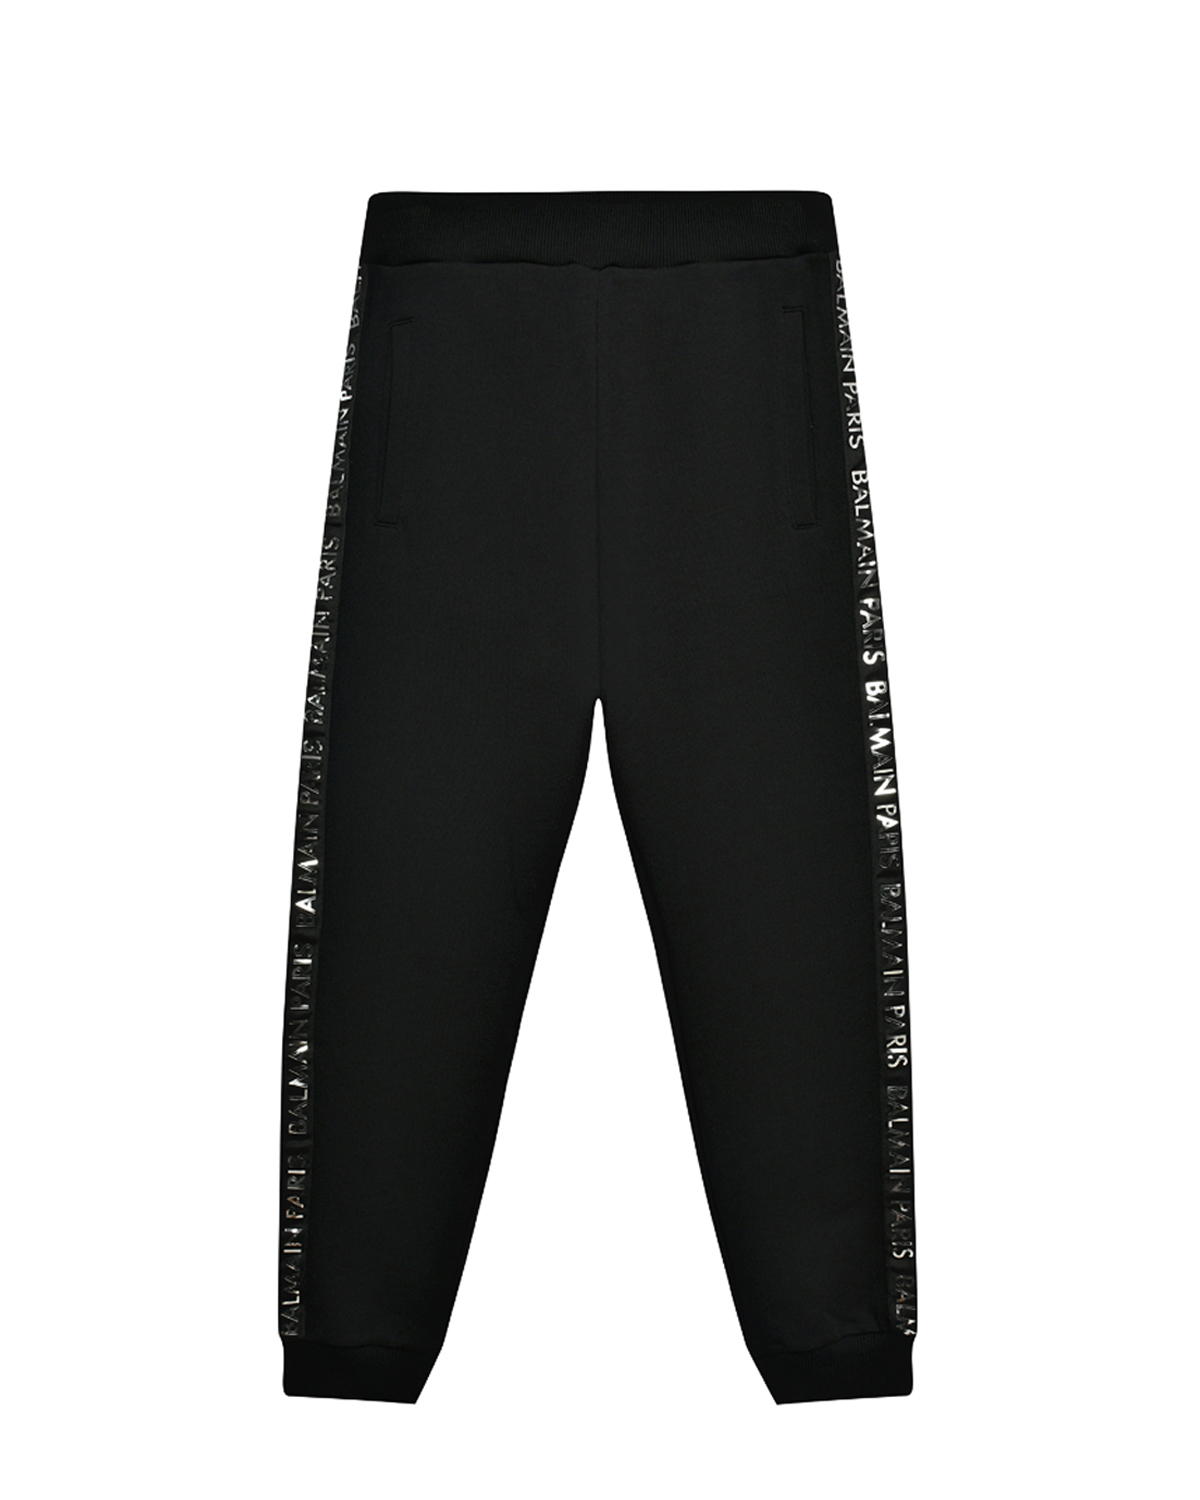 Спортивные брюки с брендированными лампасами Balmain, размер 164, цвет черный